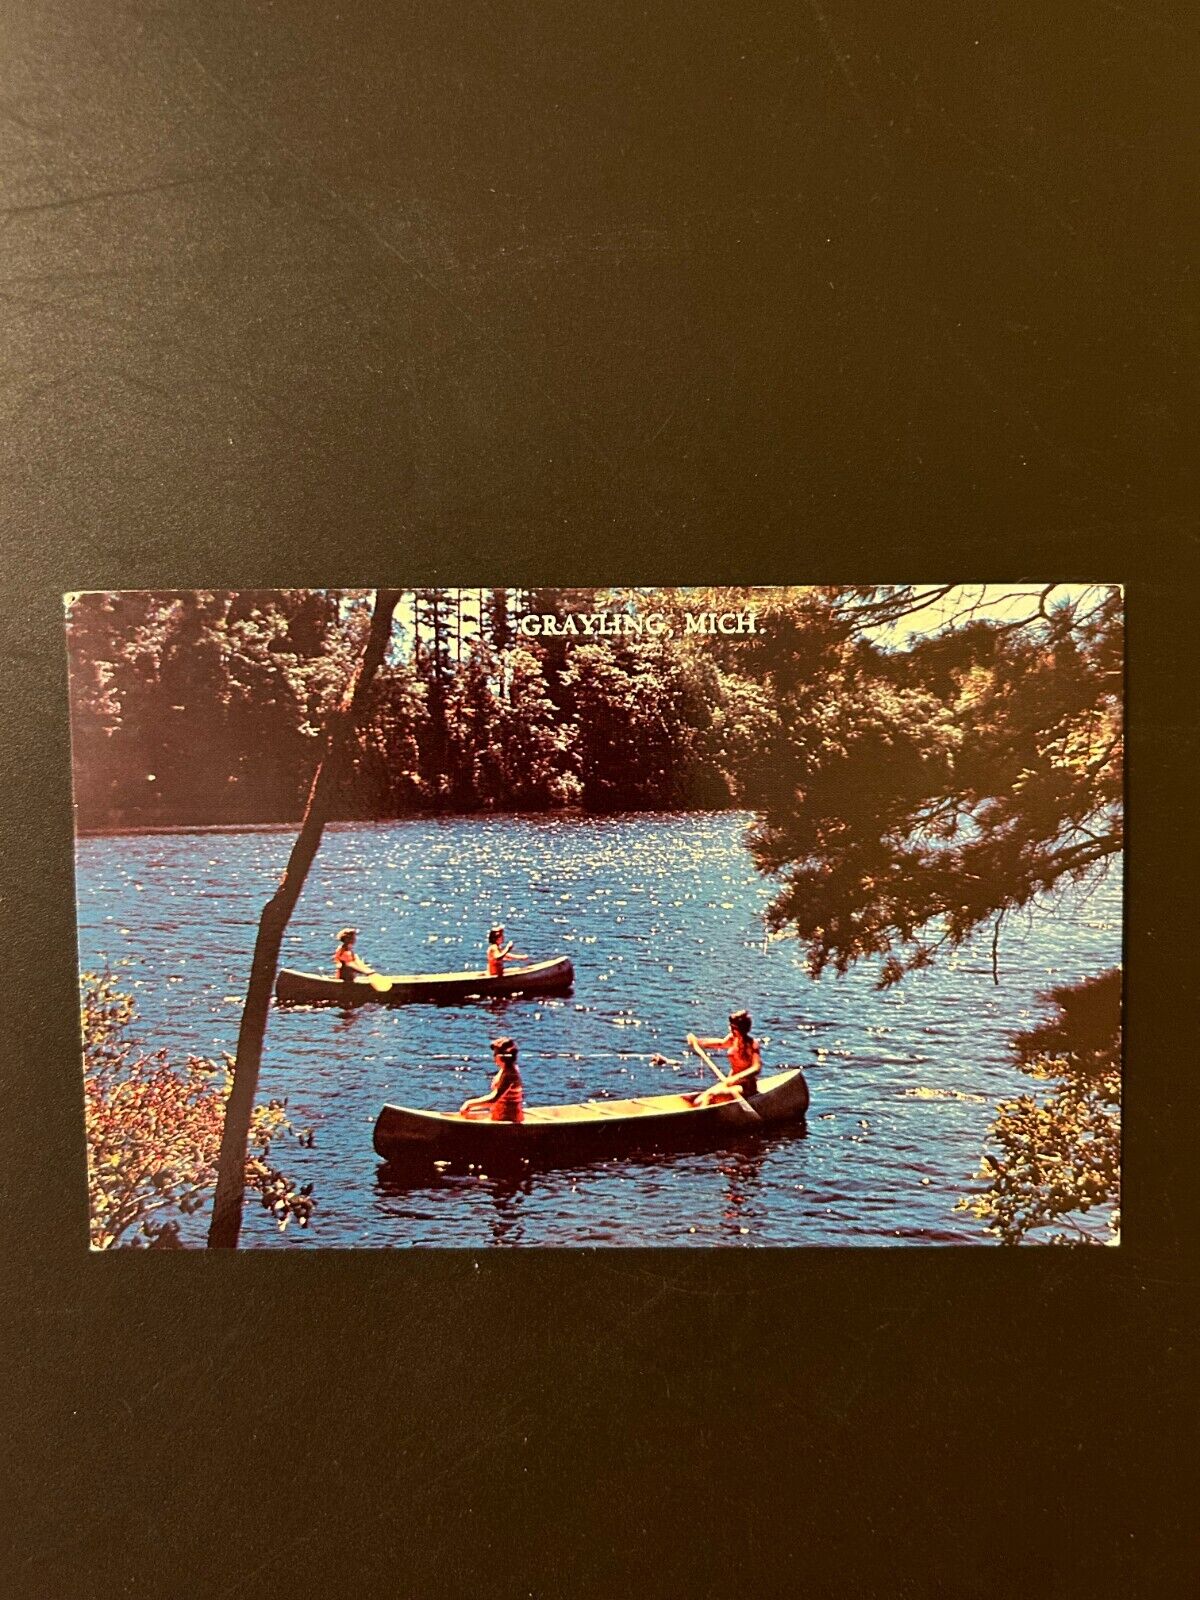 Grayling Michigan canoes on a lake postcard